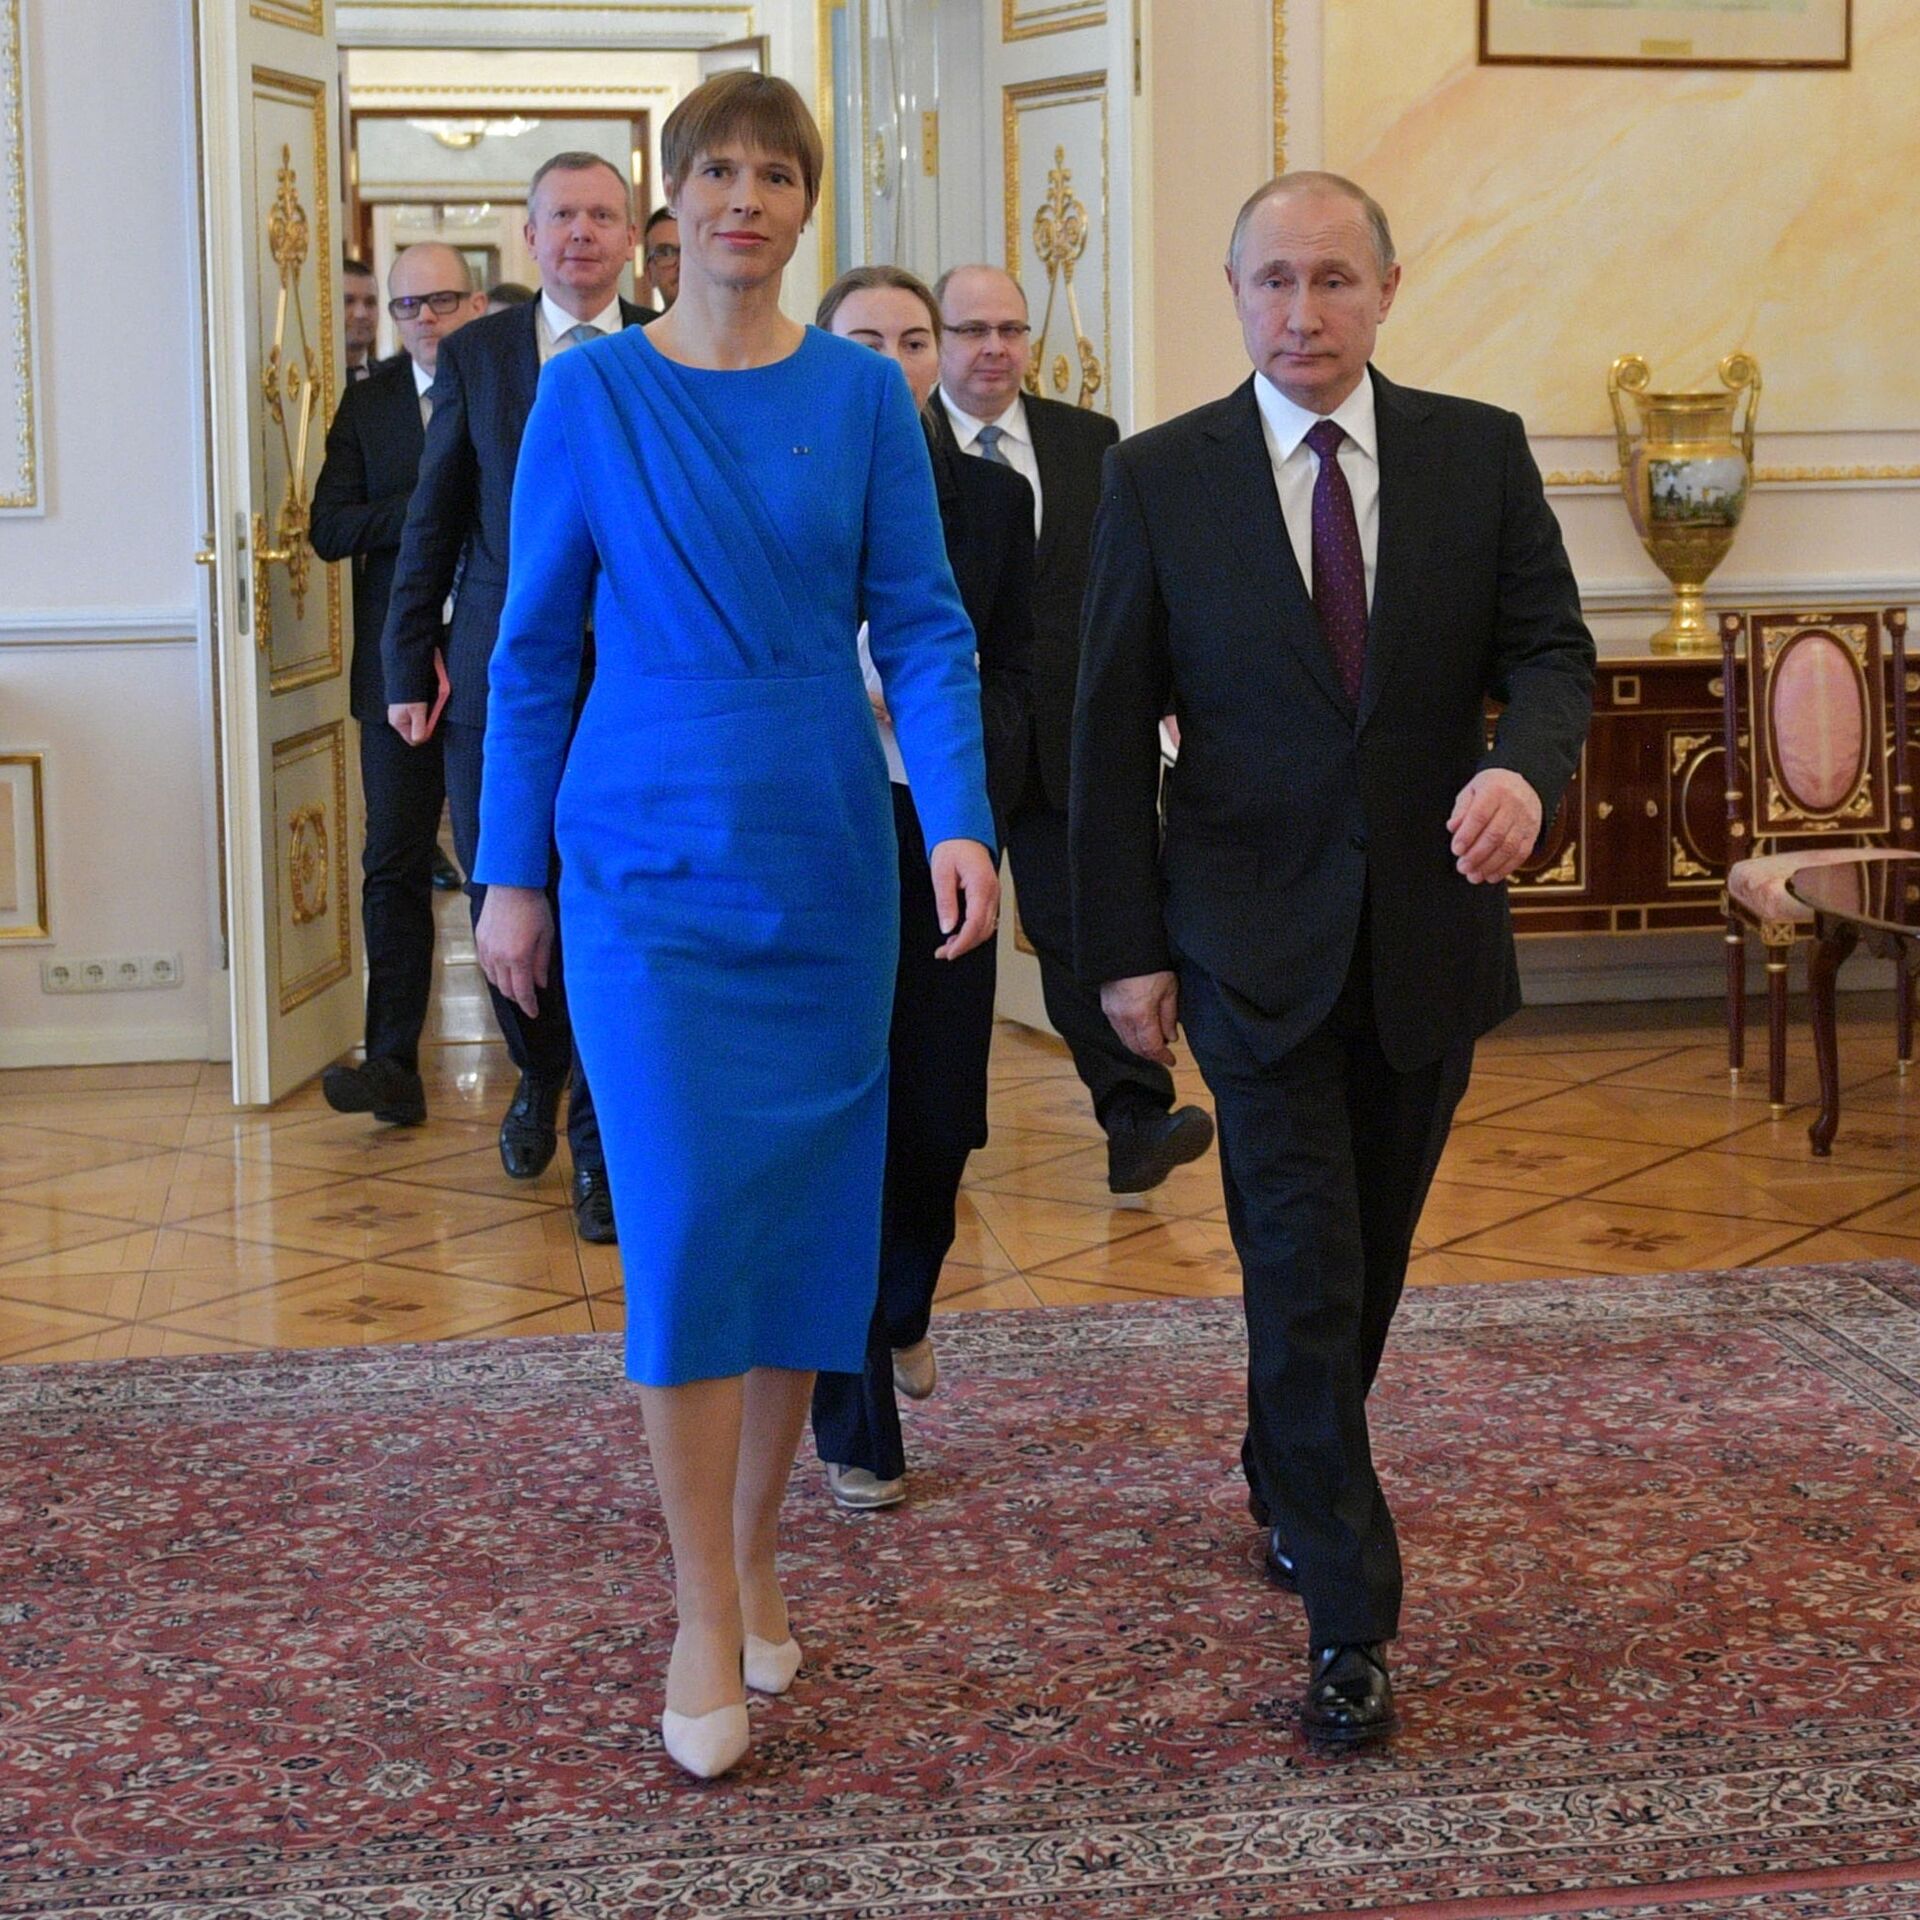 Президент эстонии с сыном фото